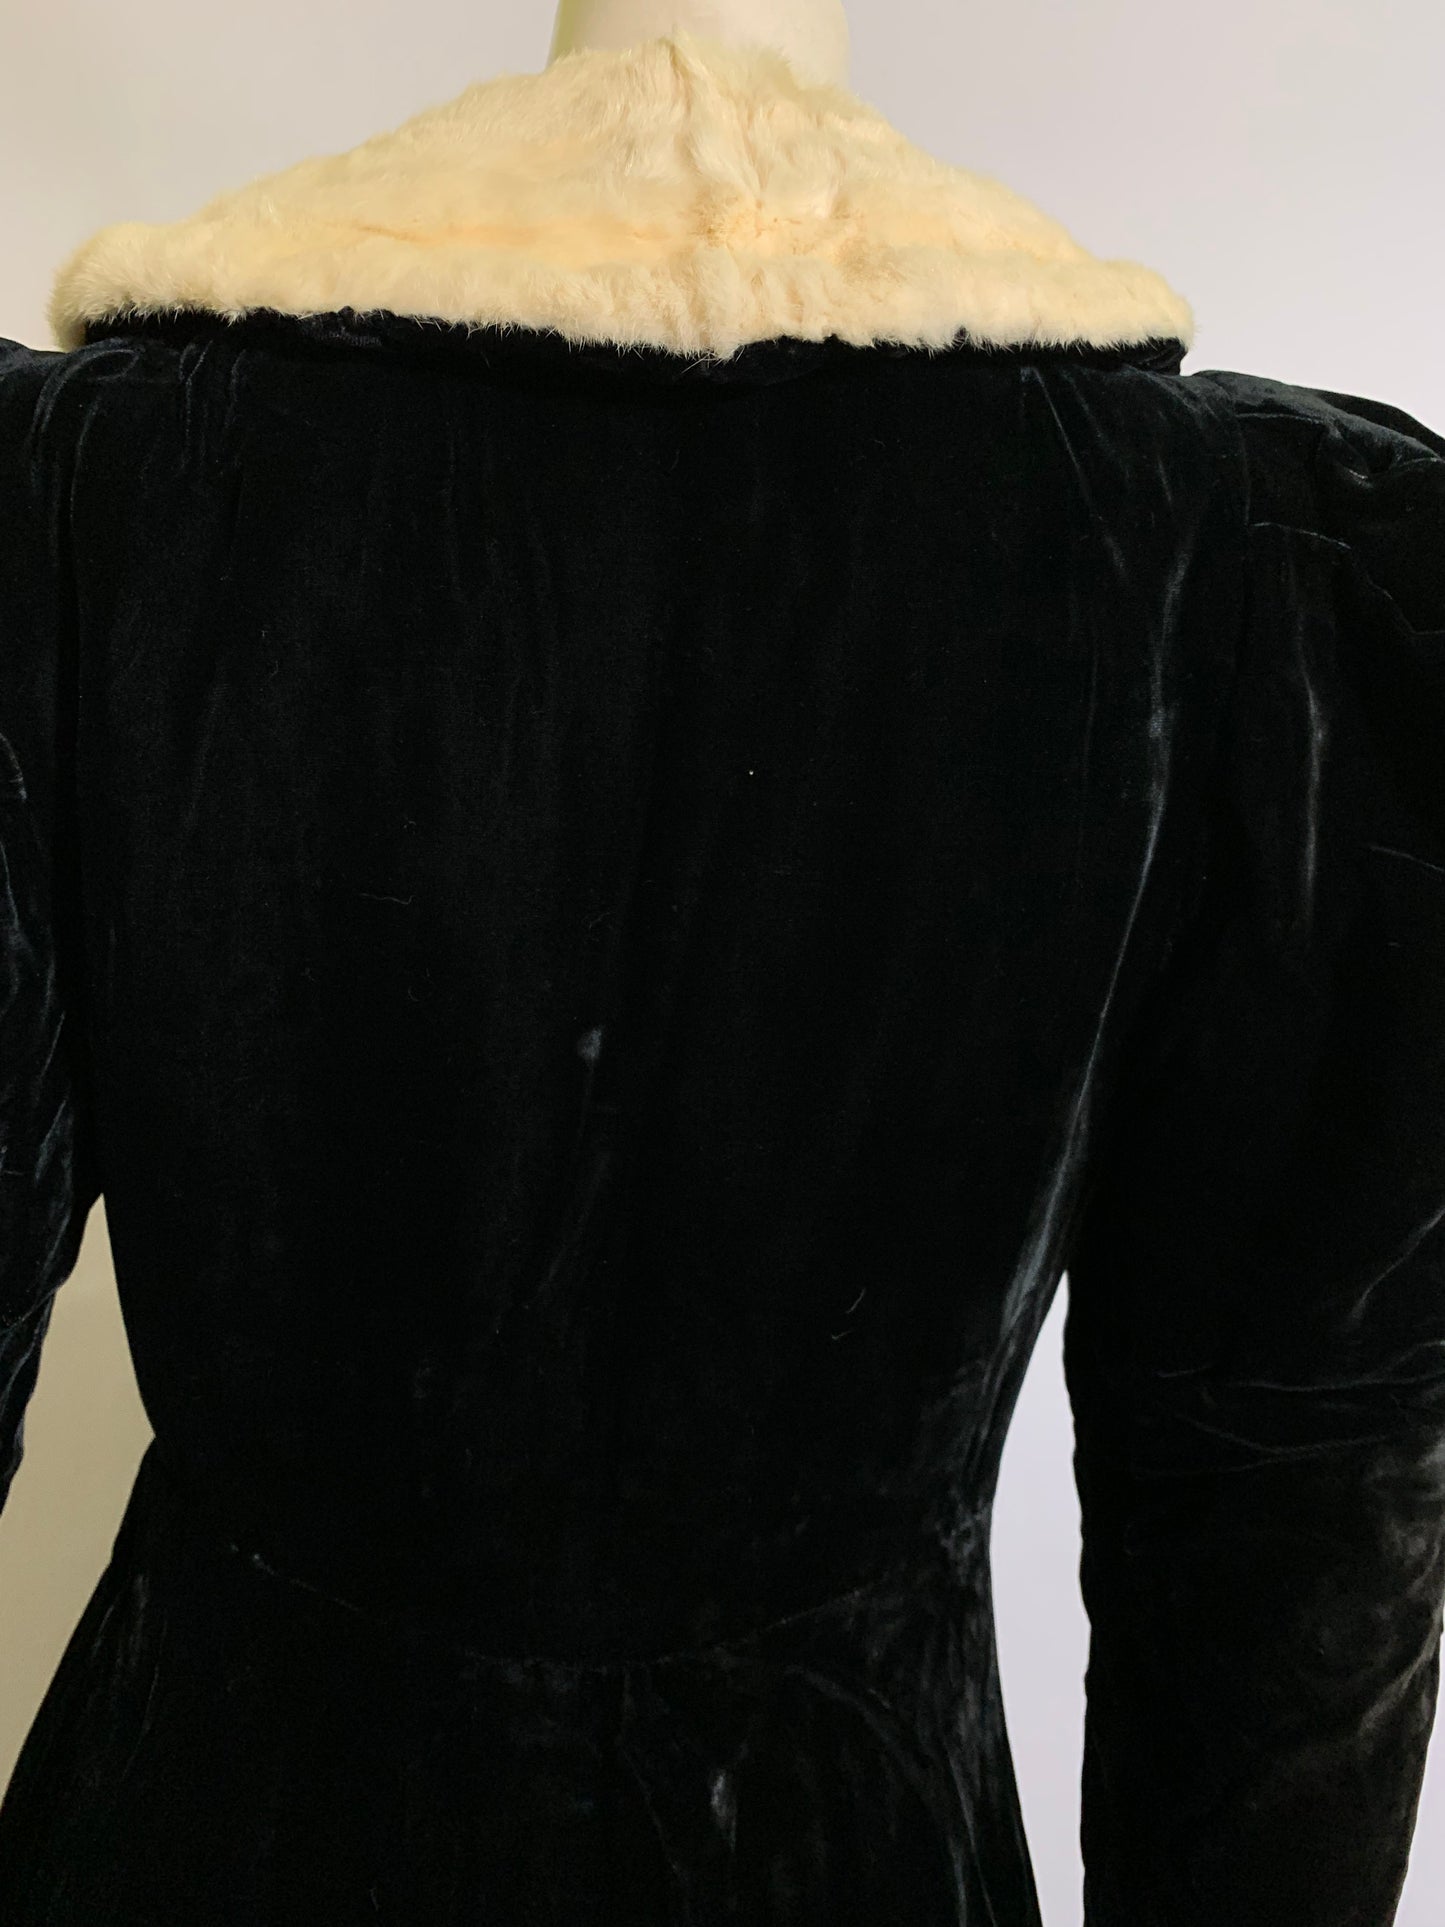 Iconic Black Velvet Princess Line Opera Coat with Ermine Collar circa 1930s